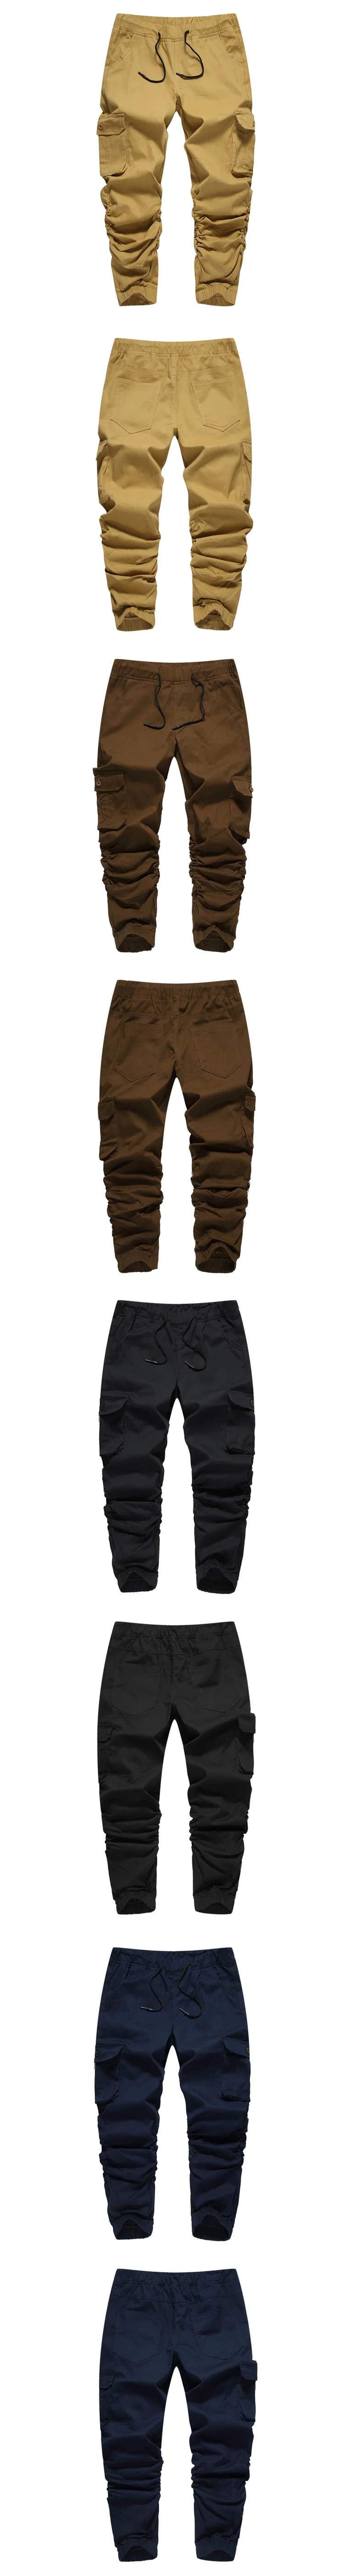 2019 мужские армейские зеленые брюки-карго мужские спортивные штаны Молодежные повседневные брюки с резинками на щиколотках Брендовые